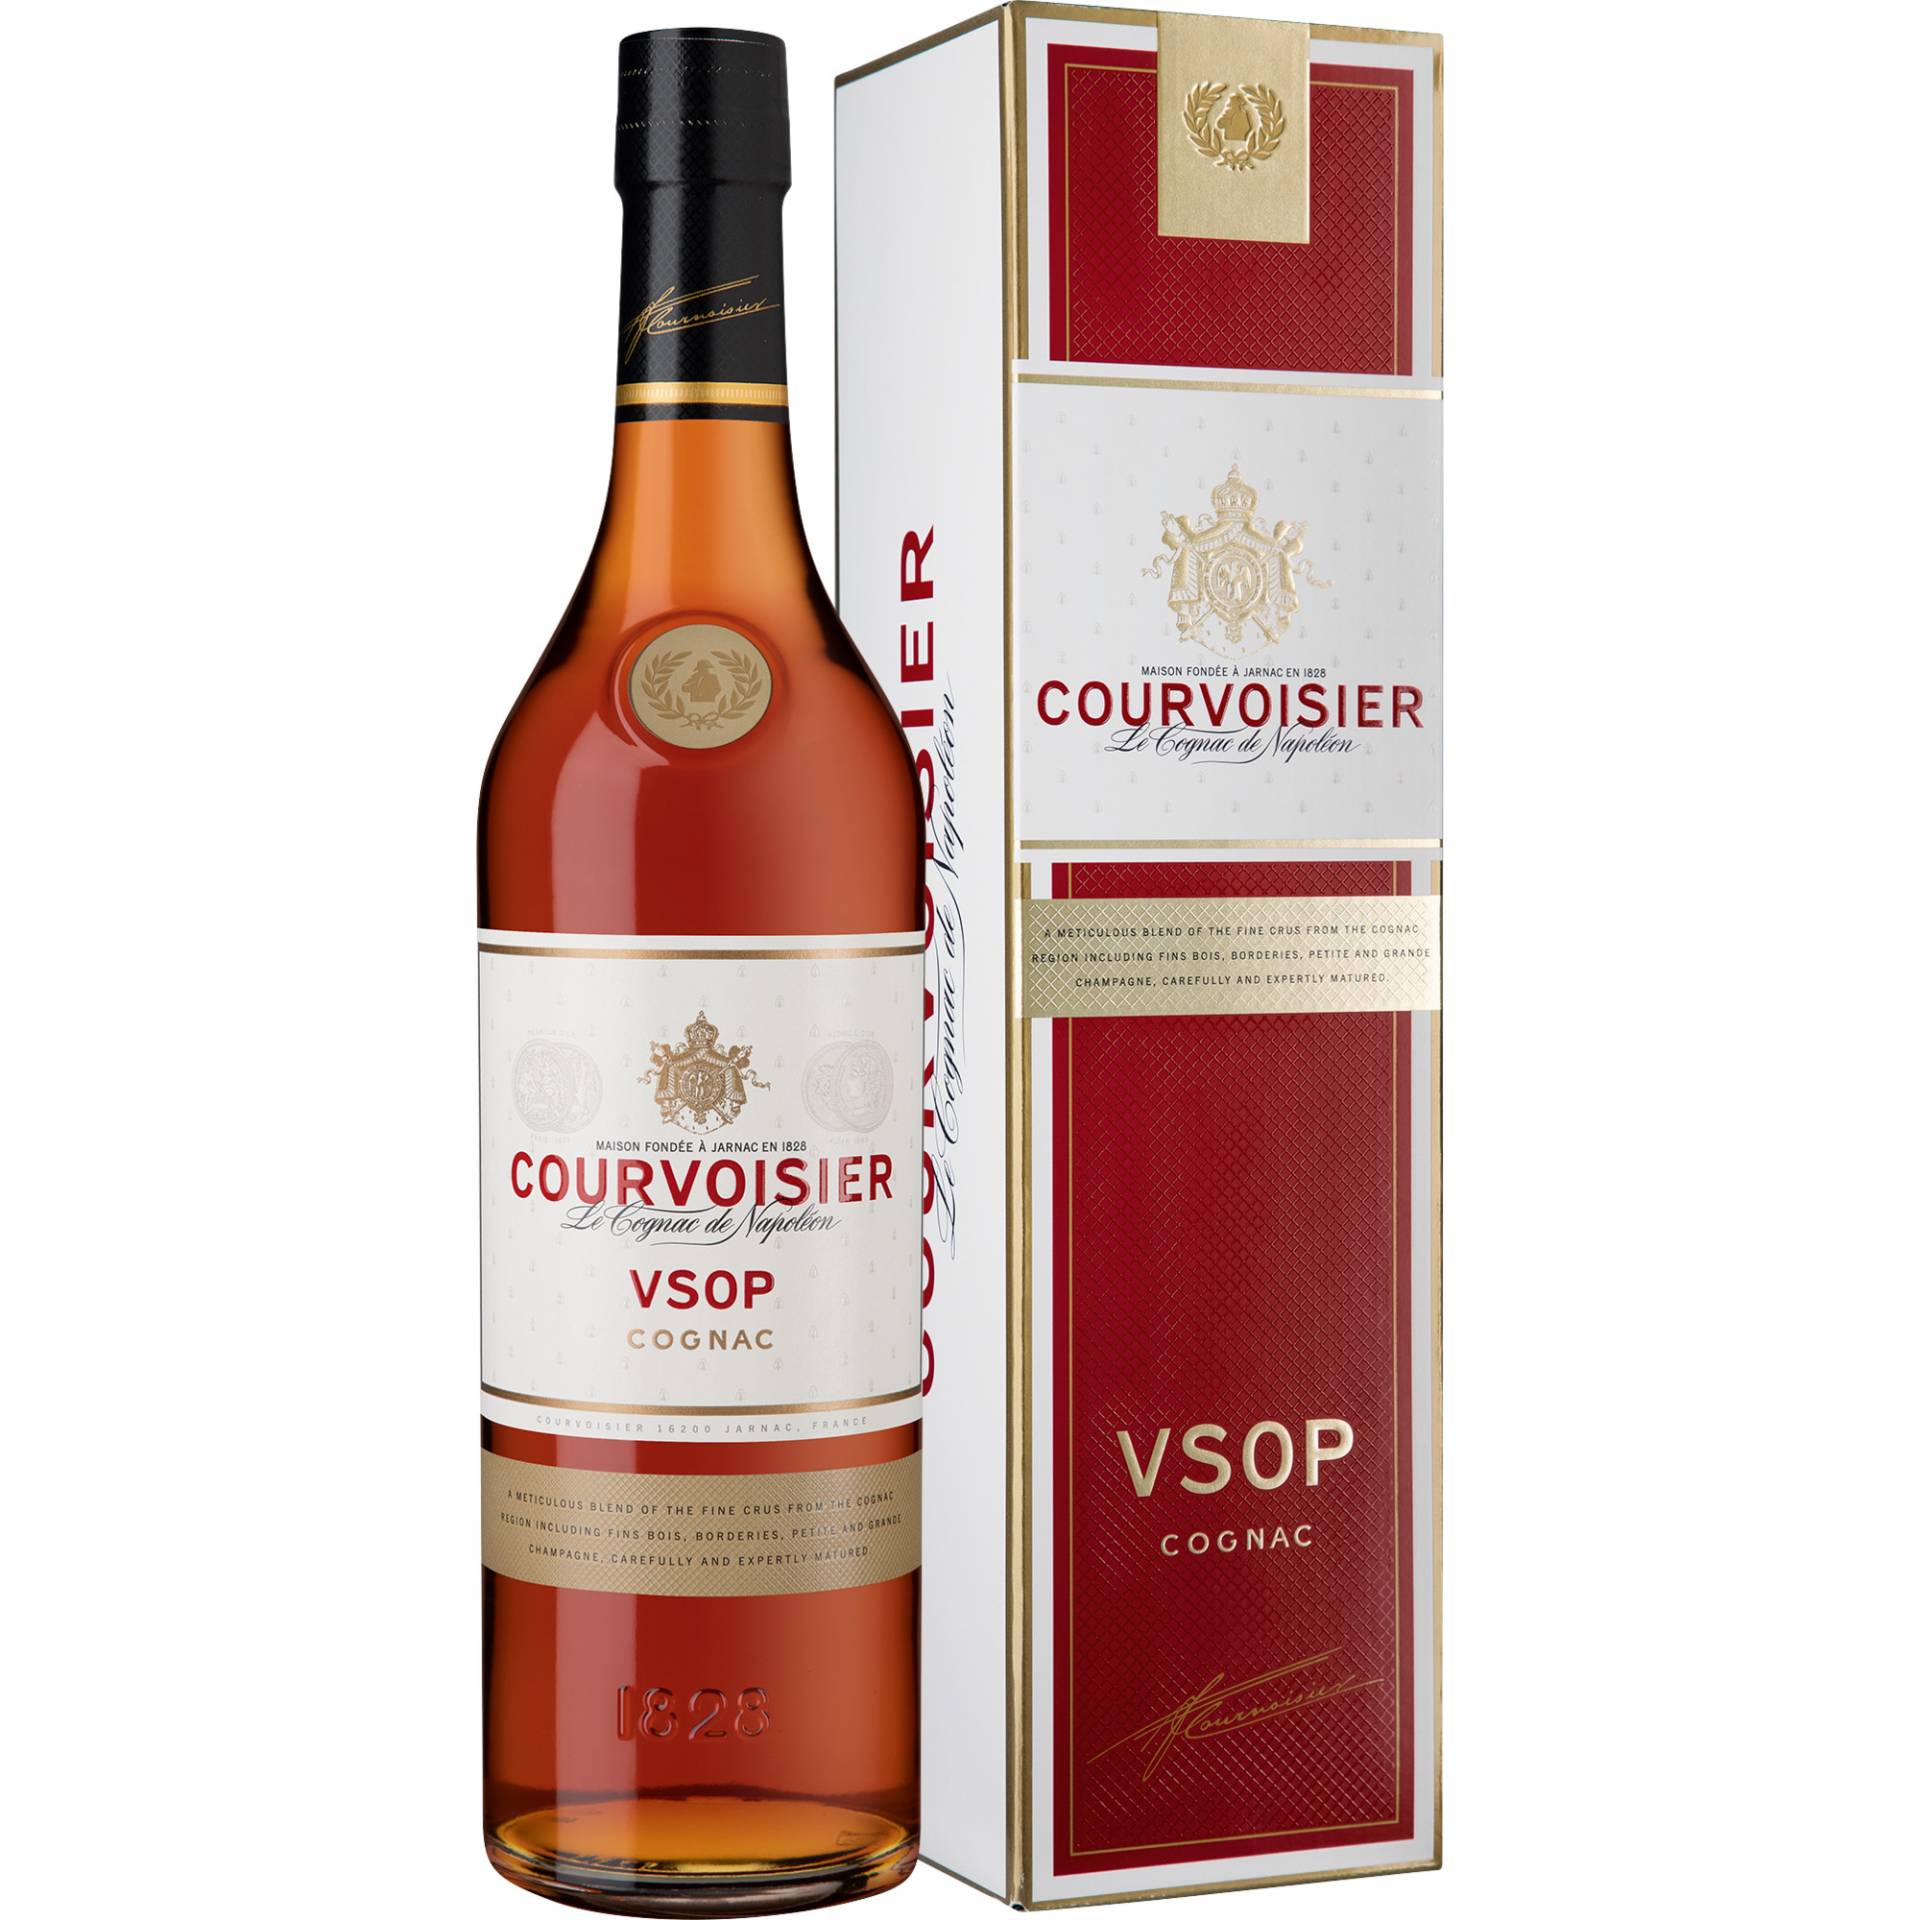 Courvoisier VSOP Cognac, Cognac AOC, 0,7 L, 40% Vol., Präsente von Courvoisier, 2 Place du Chateau, 16200 Jarnac, France